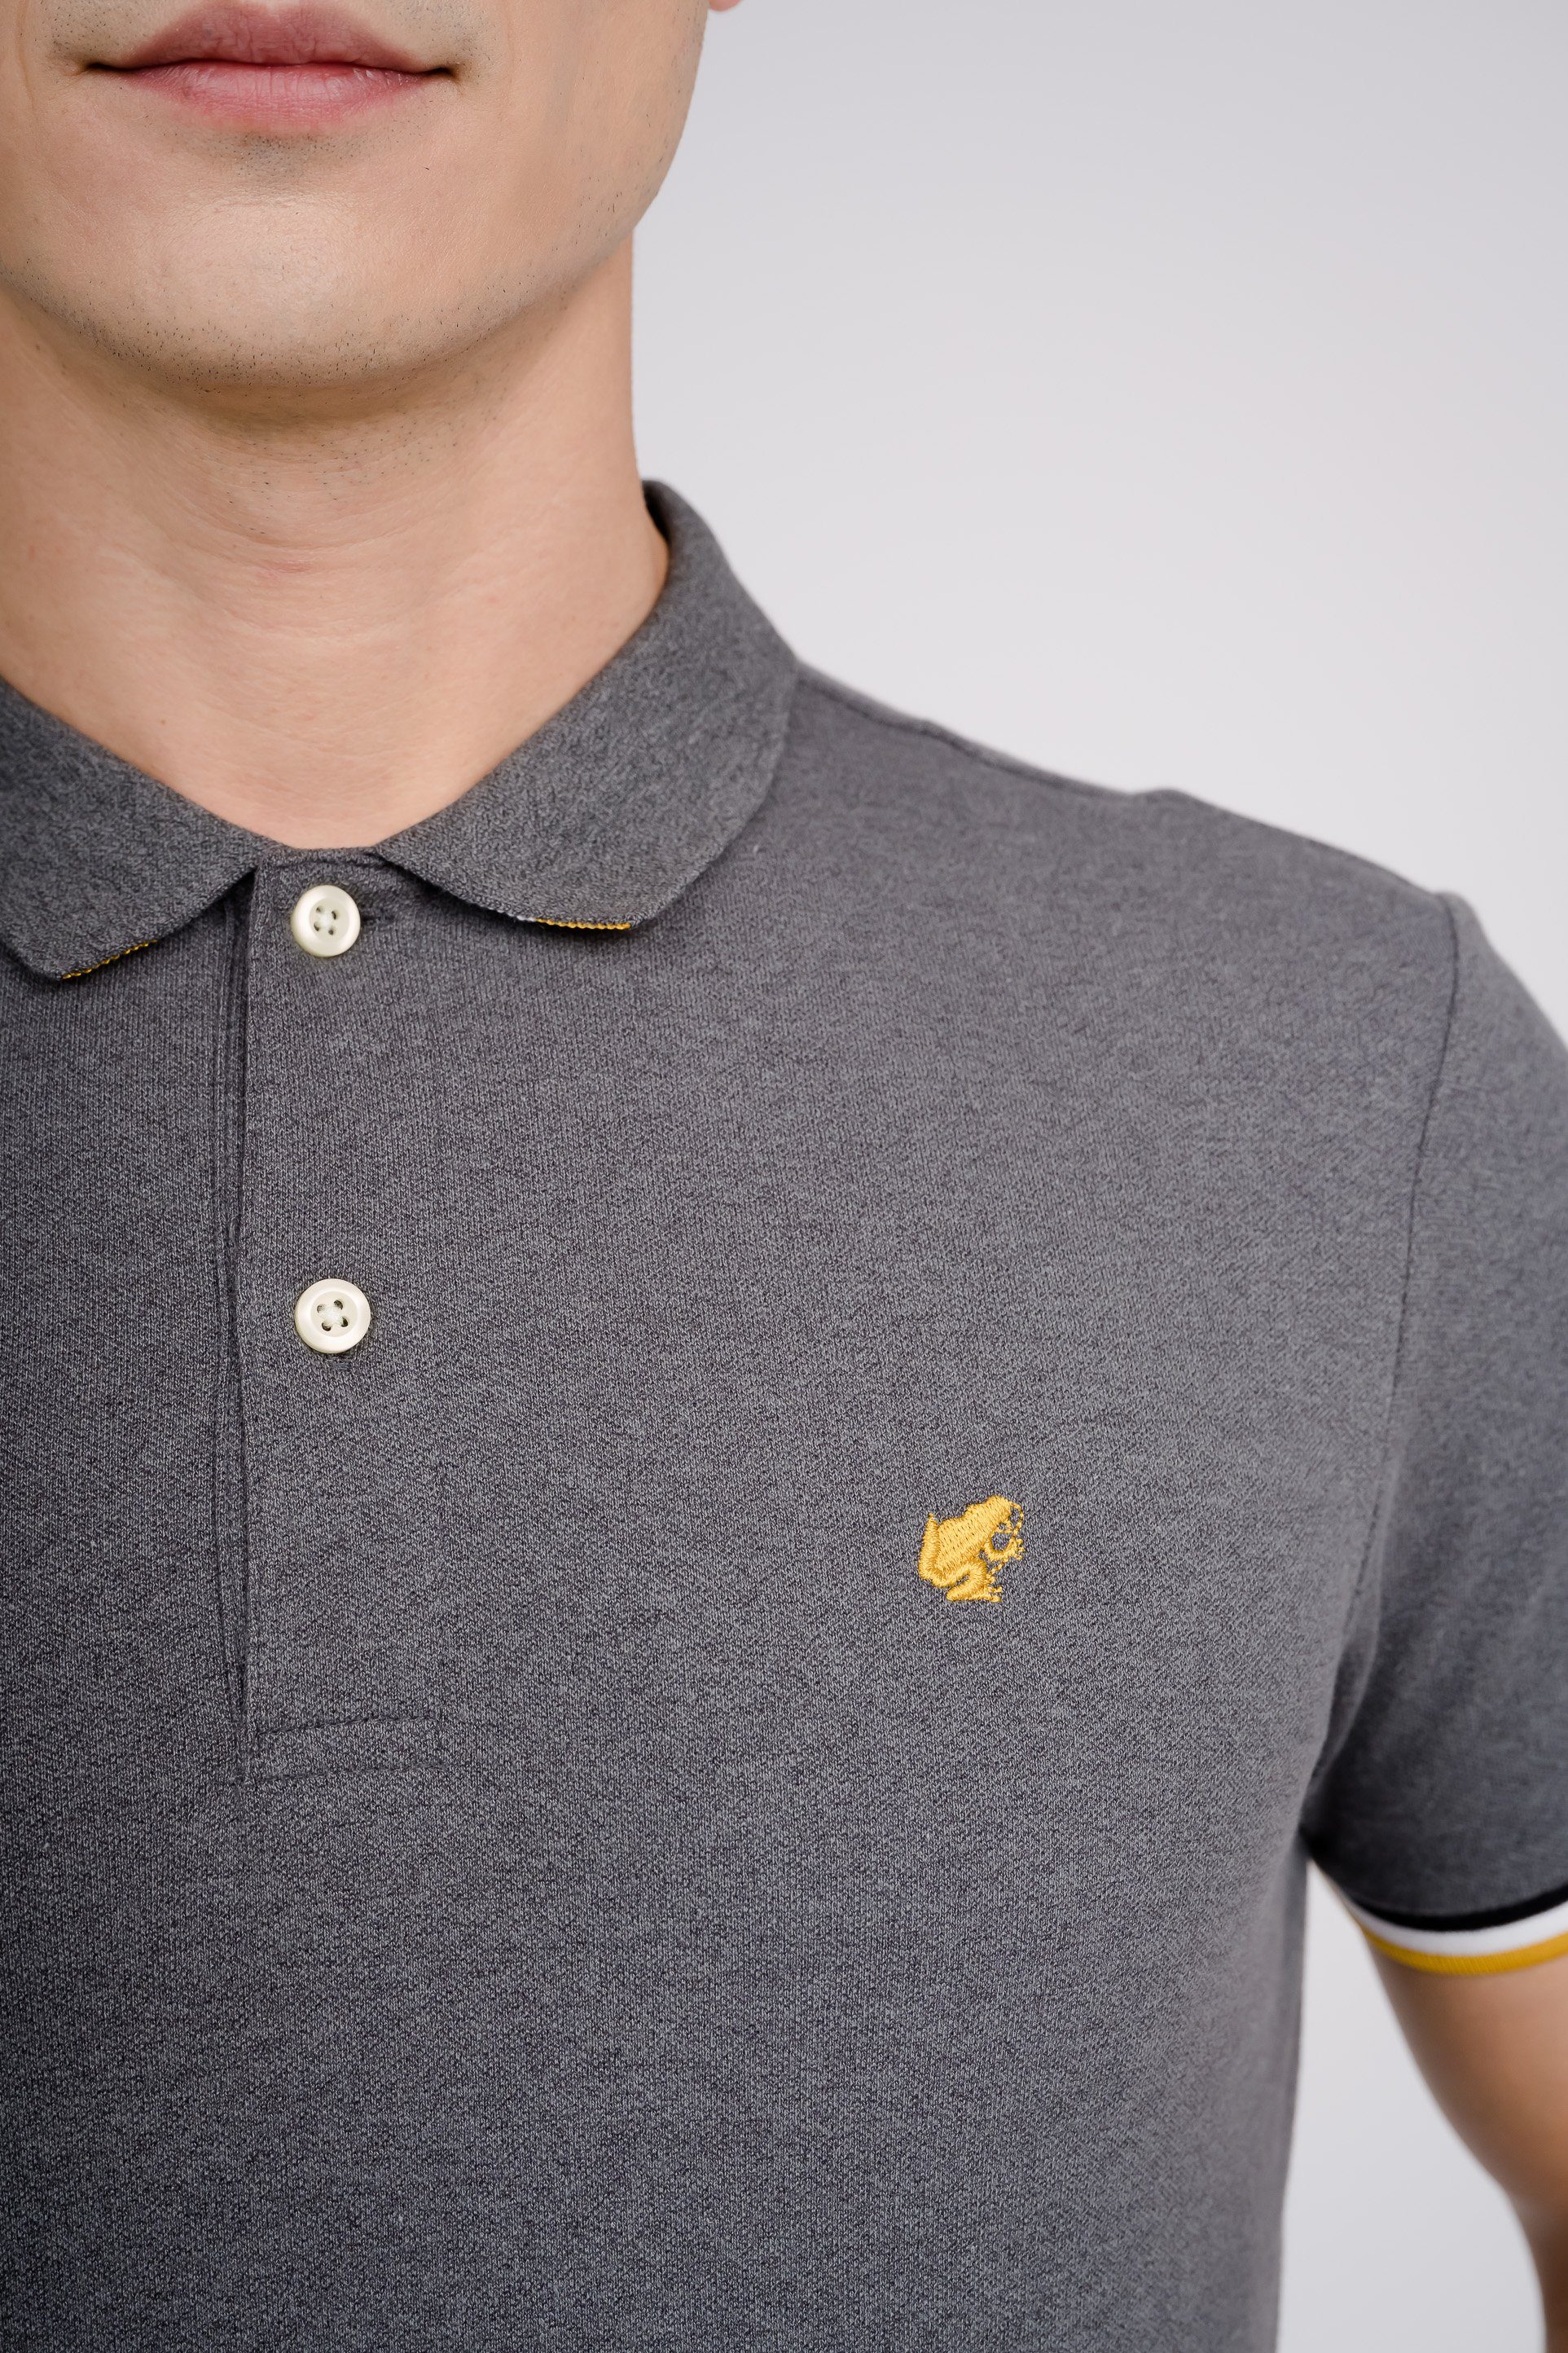 dunkelgrau-meliert Poloshirt kleiner GIORDANO Frosch-Stickerei mit